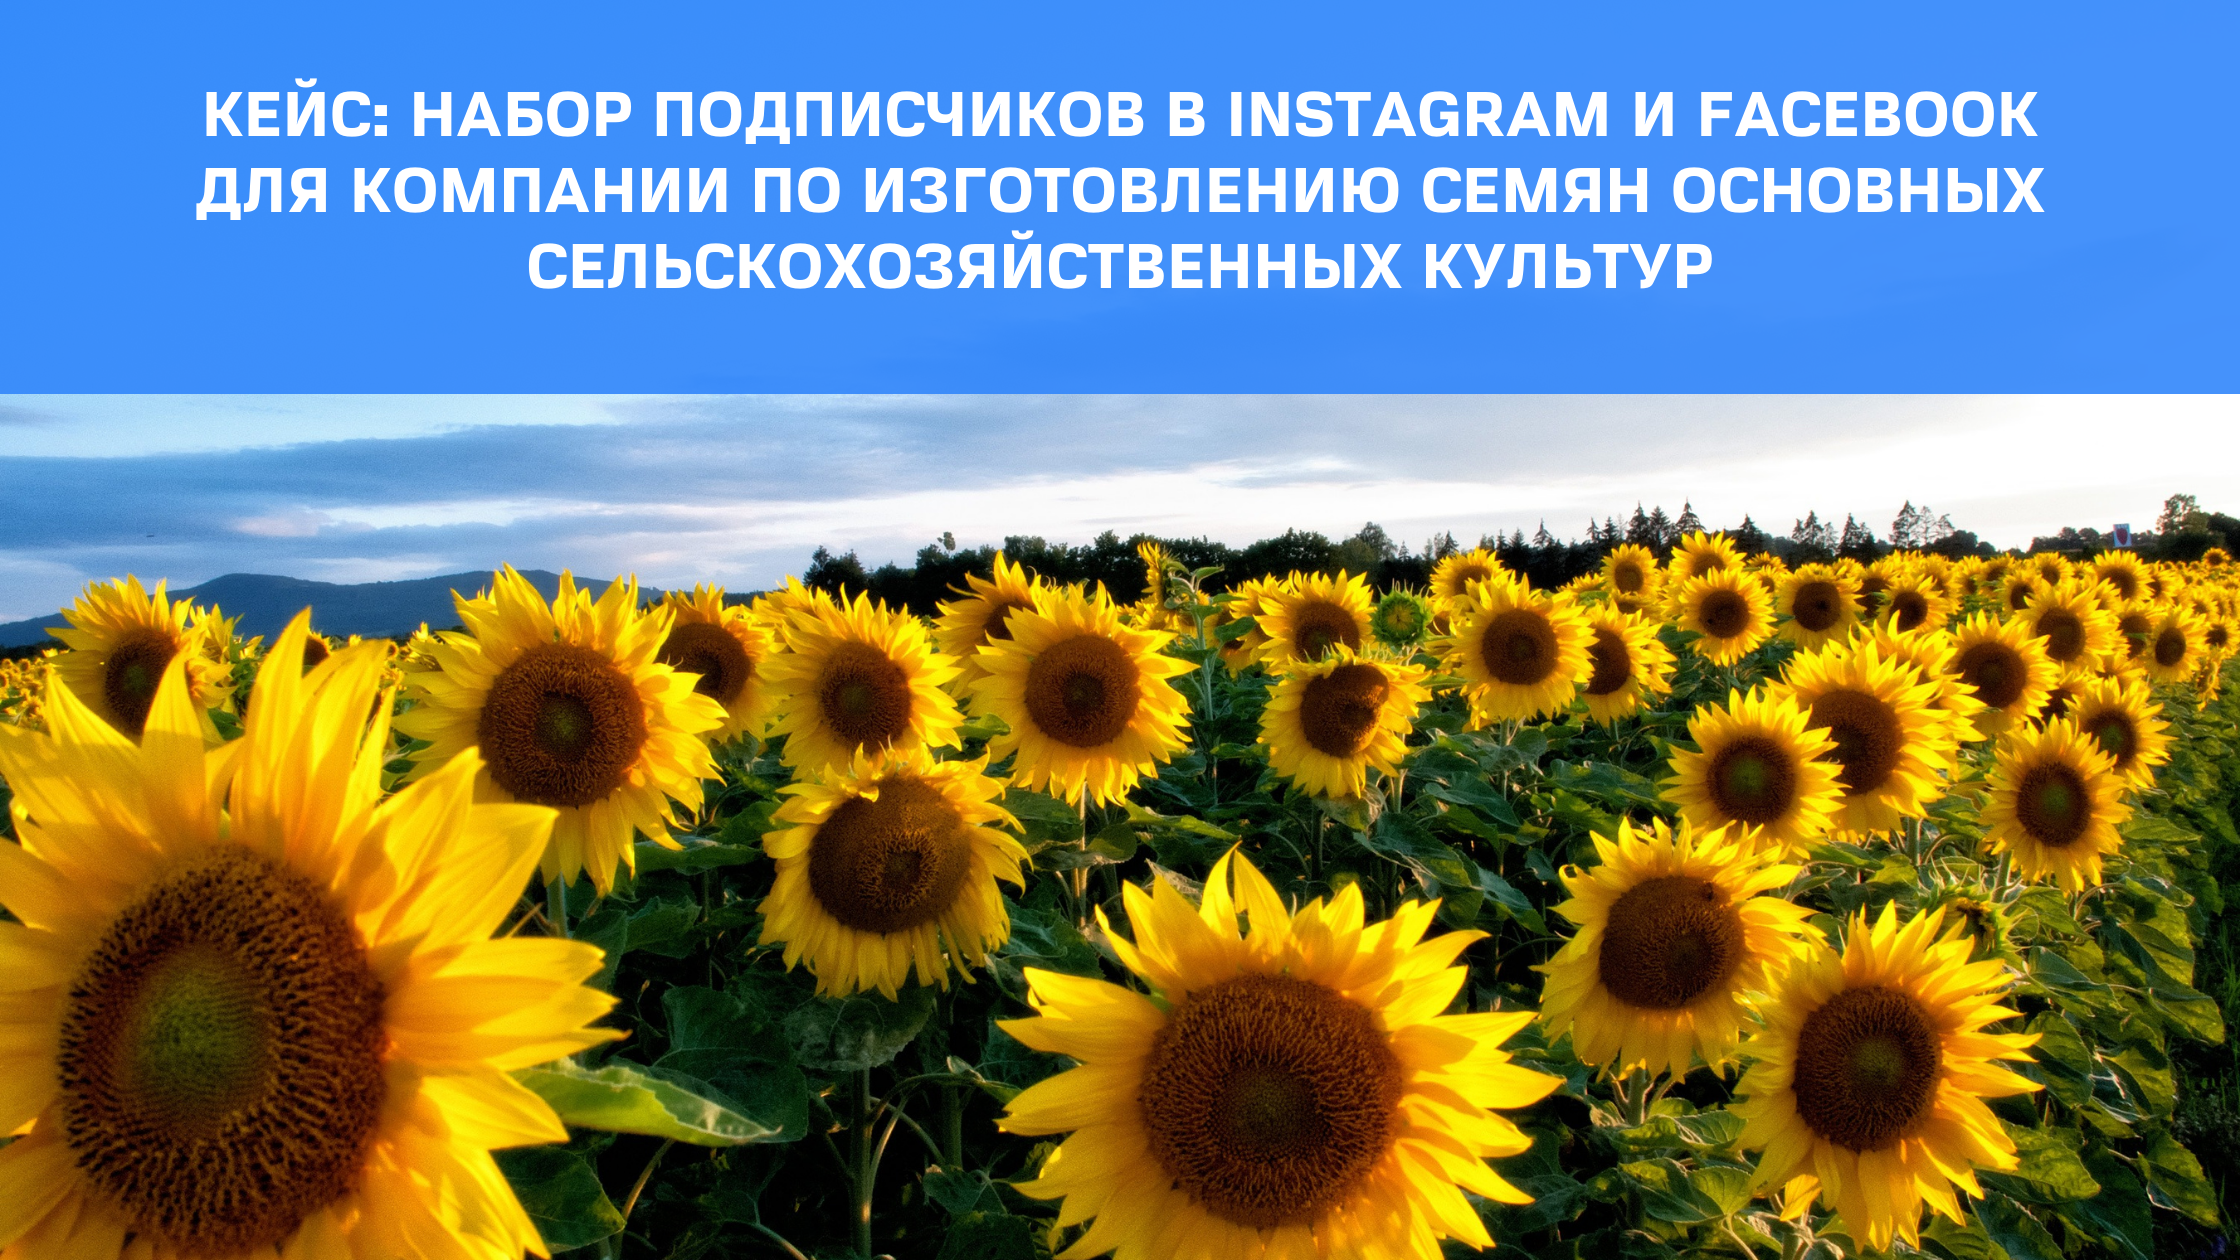 Кейс: Набор подписчиков в Instagram и Facebook для компании по изготовлению семян основных сельскохозяйственных культур